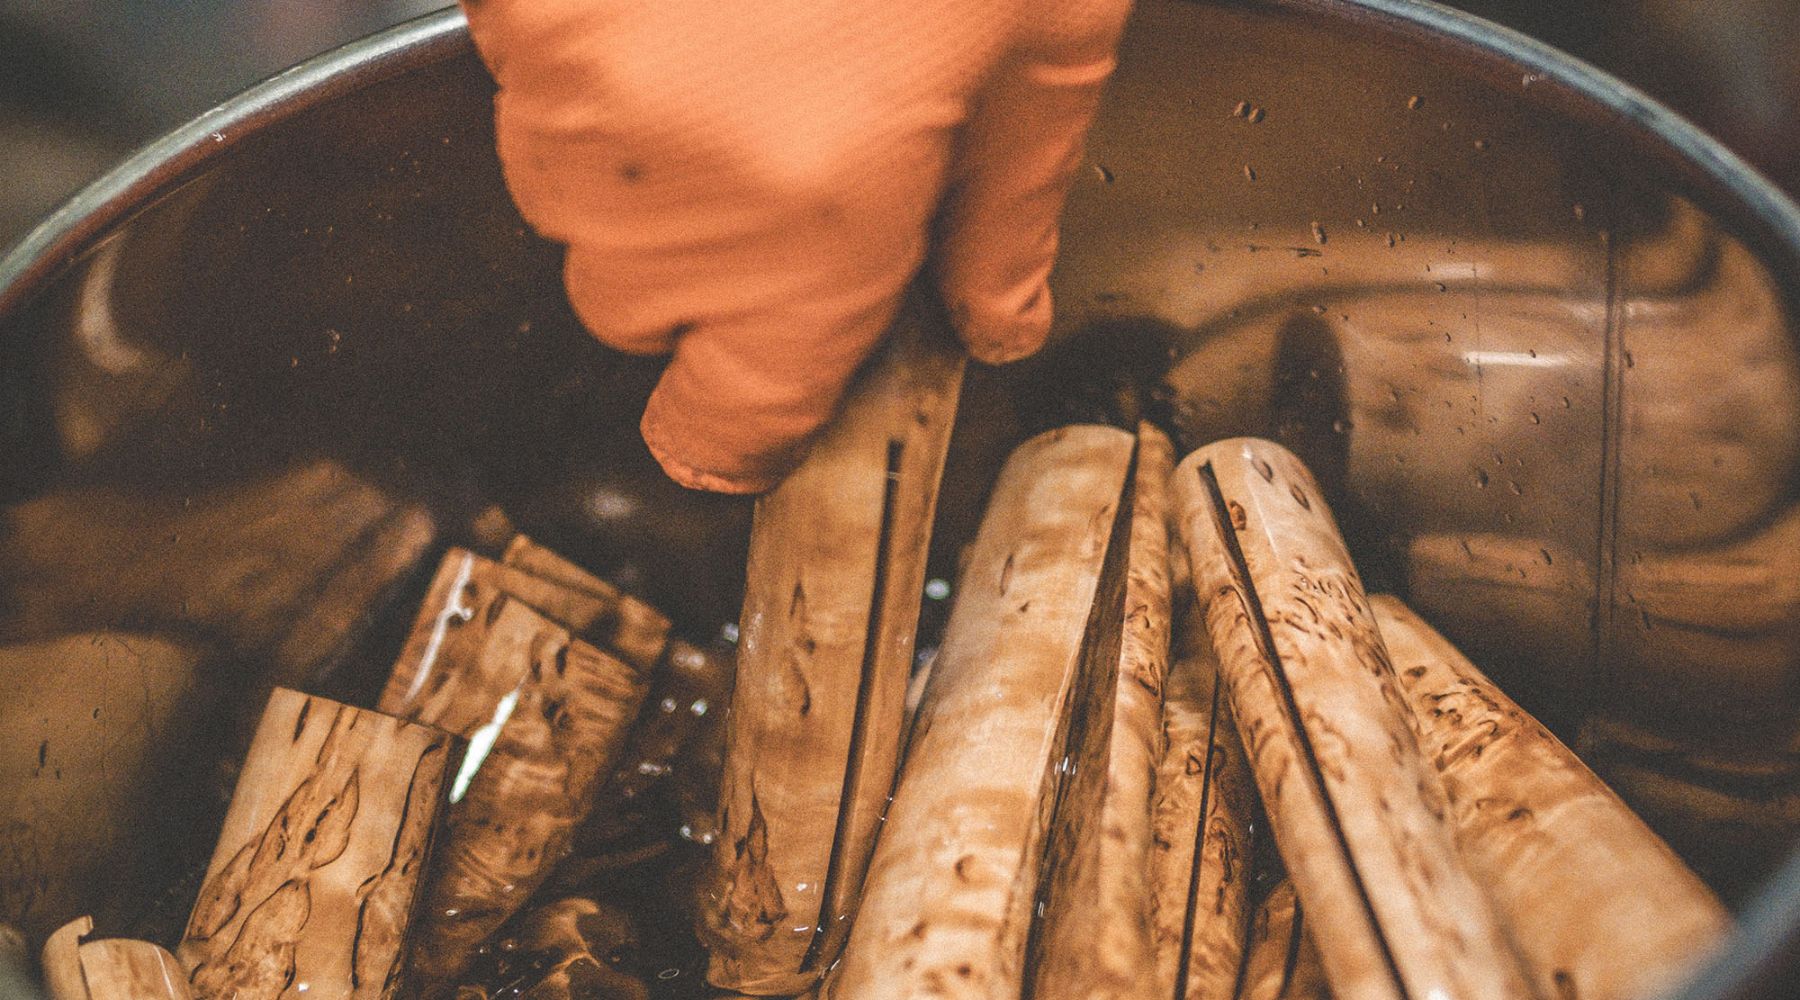 Blogg om hur vi stabiliserar träet på våra knivhandtag